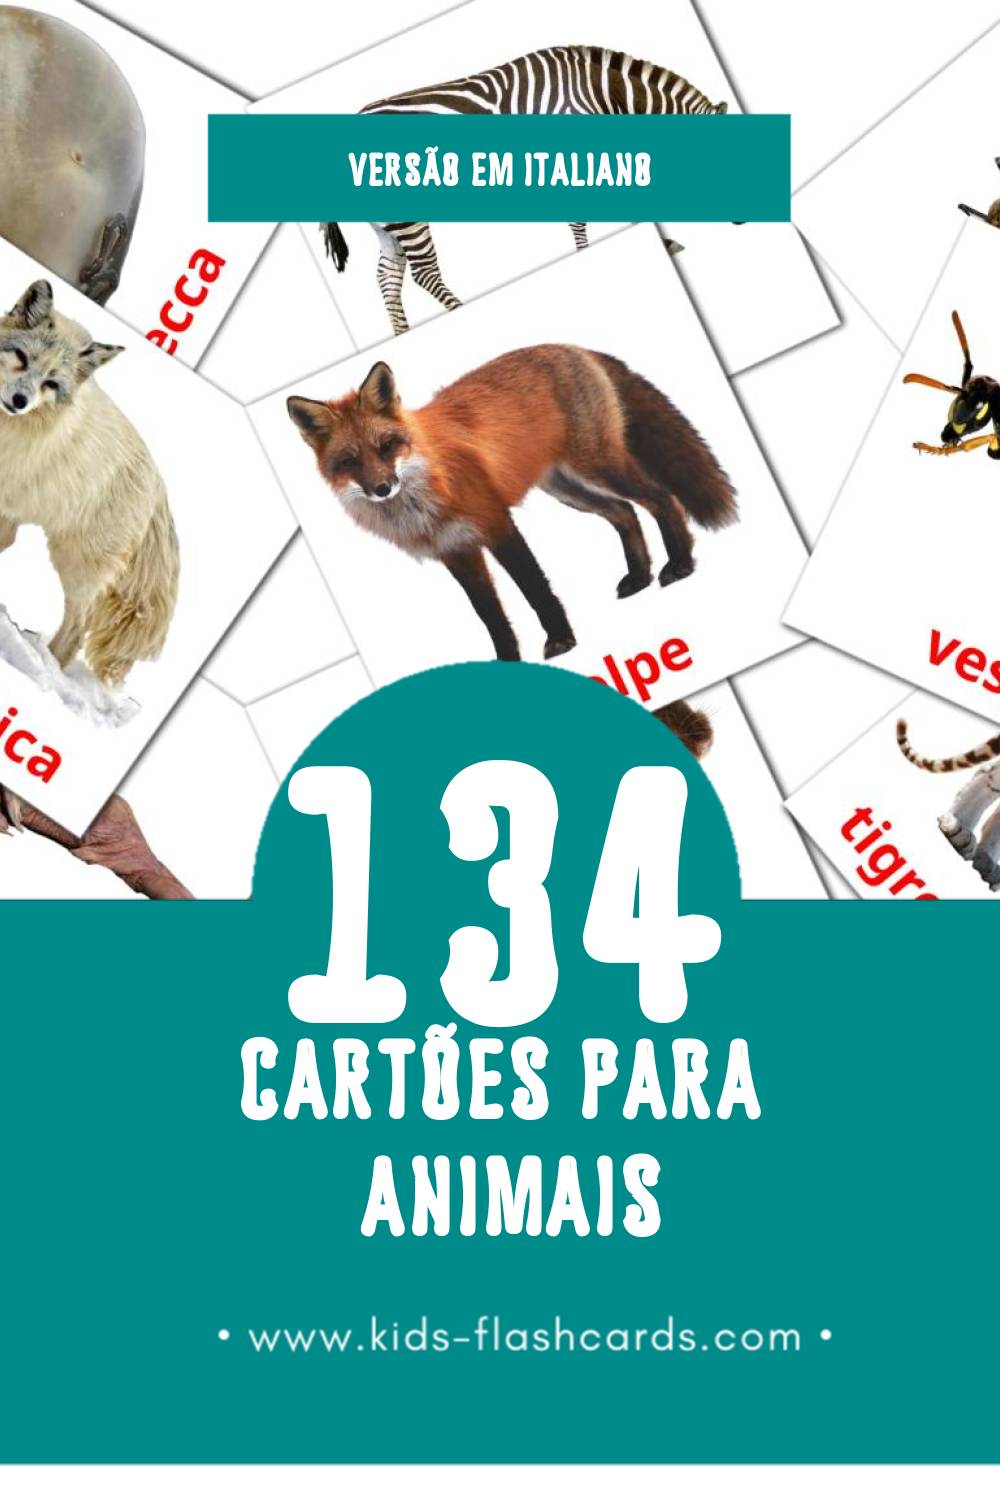 Flashcards de Animali Visuais para Toddlers (134 cartões em Italiano)